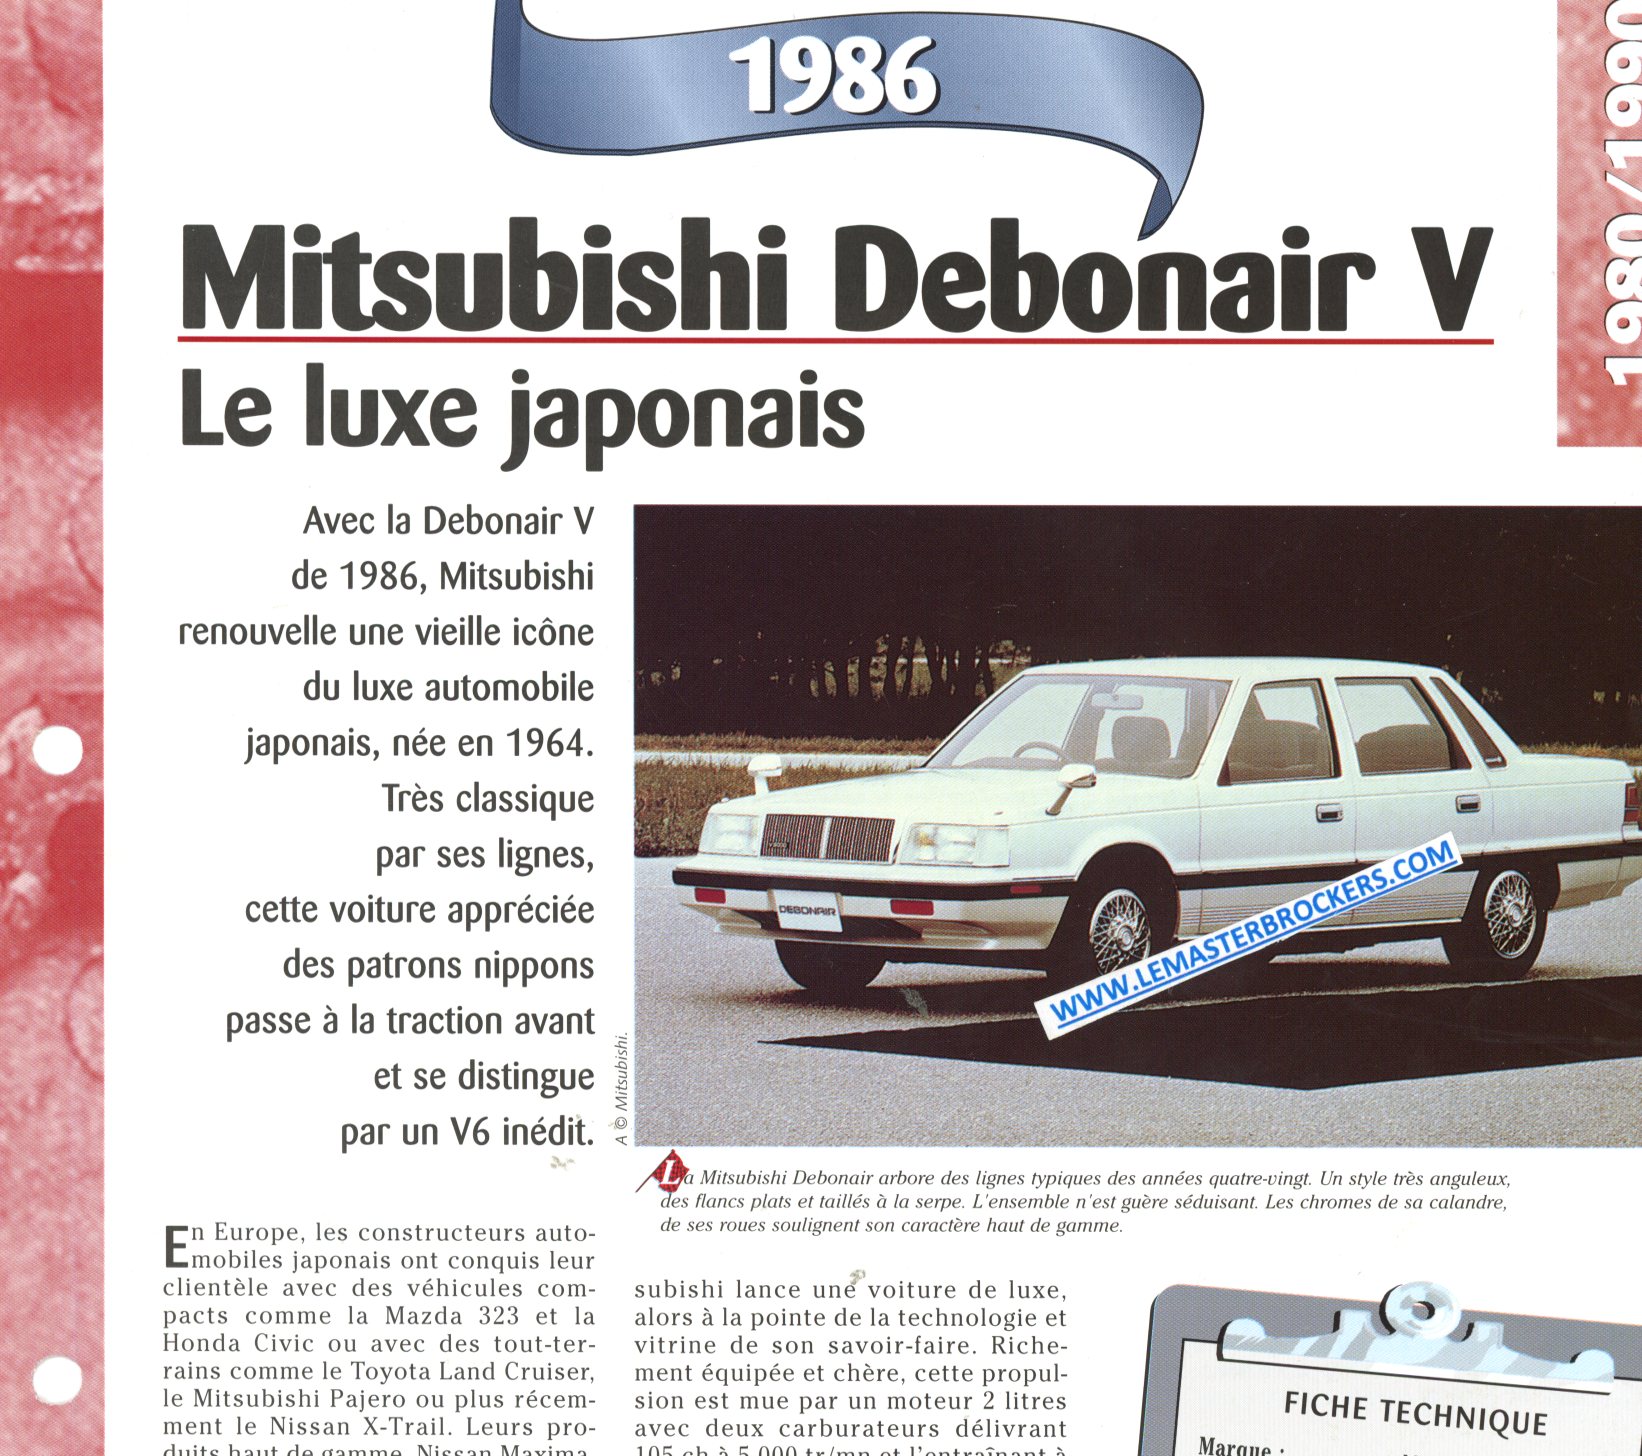 FICHE TECHNIQUE MITSUBISHI DEBONAIR V 1986